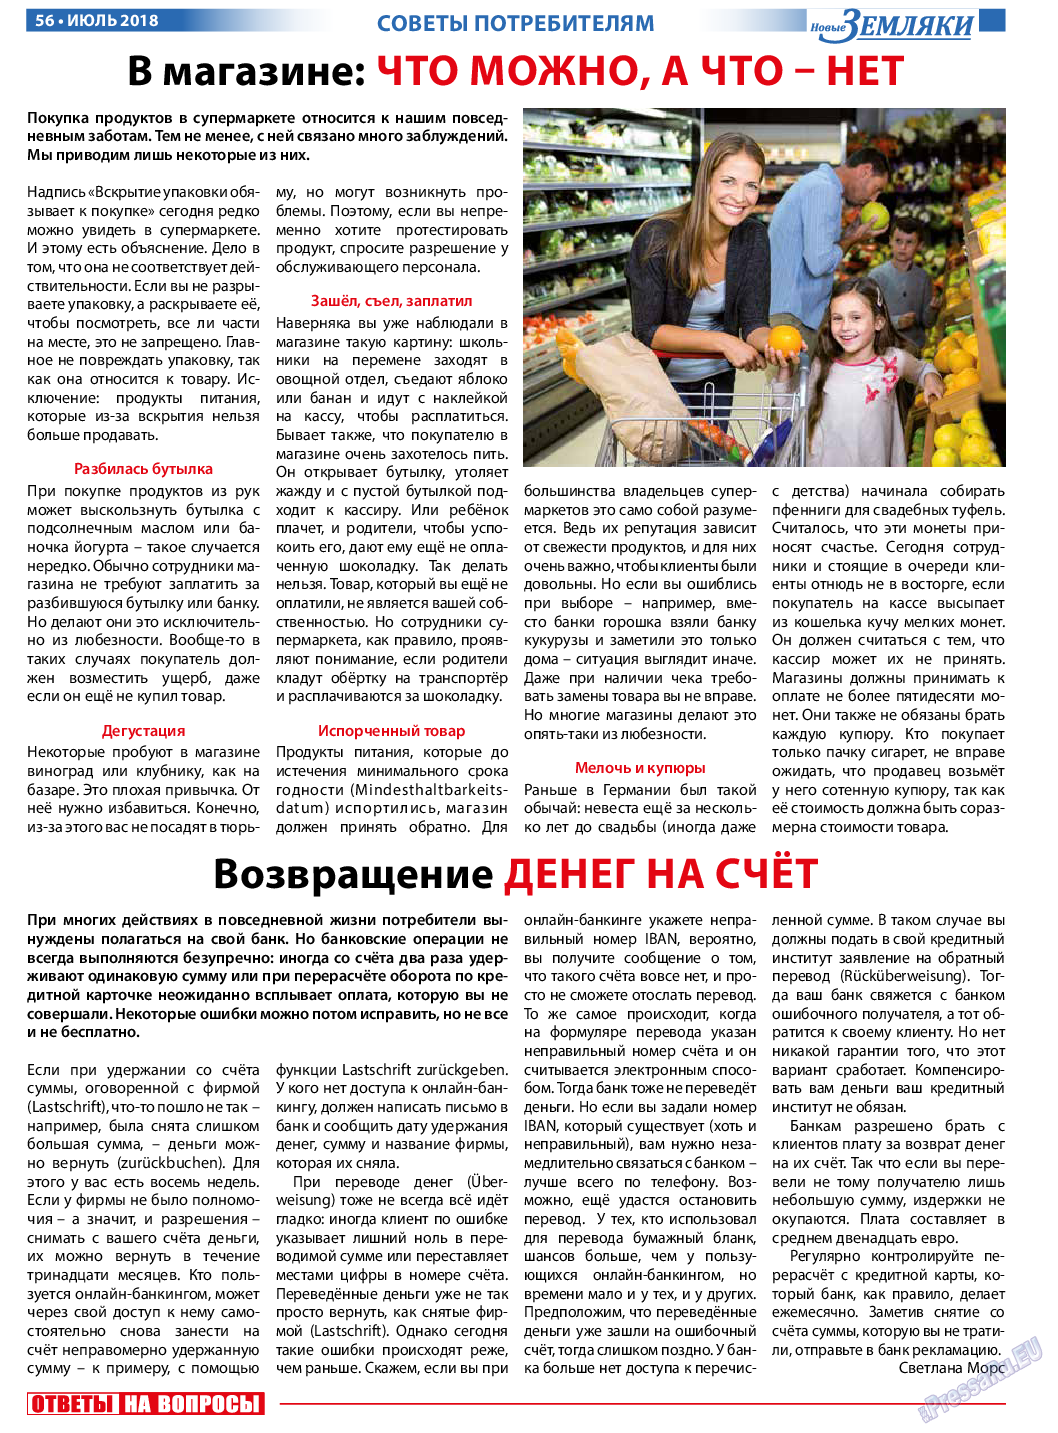 Новые Земляки, газета. 2018 №7 стр.56